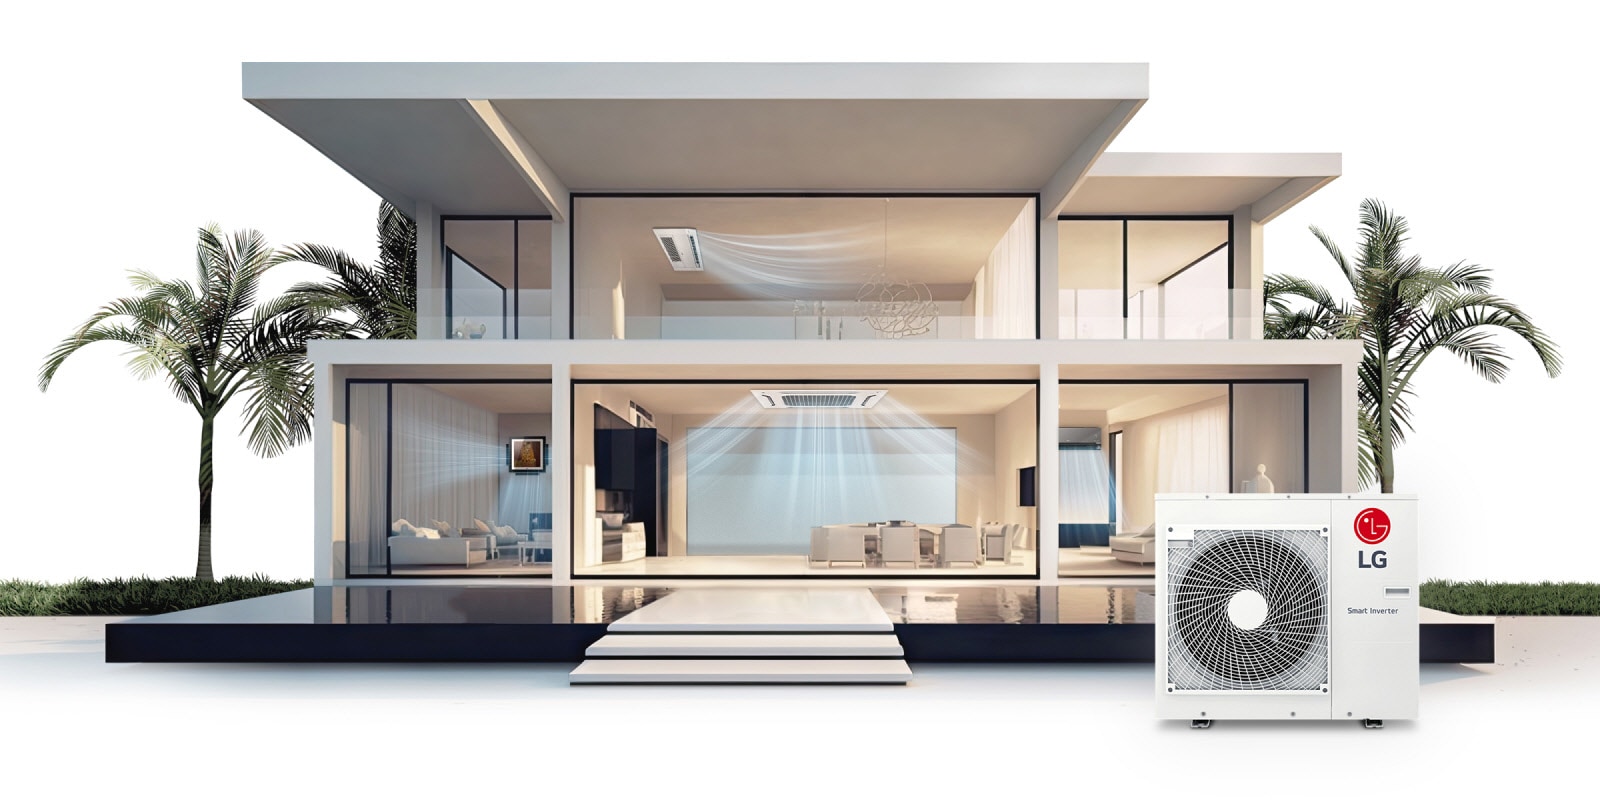 Una mansión de dos plantas muestra cuatro unidades interiores LG a través de grandes ventanales de cristal, con su flujo de aire perceptible, y una unidad Smart Inverter LG en el exterior.